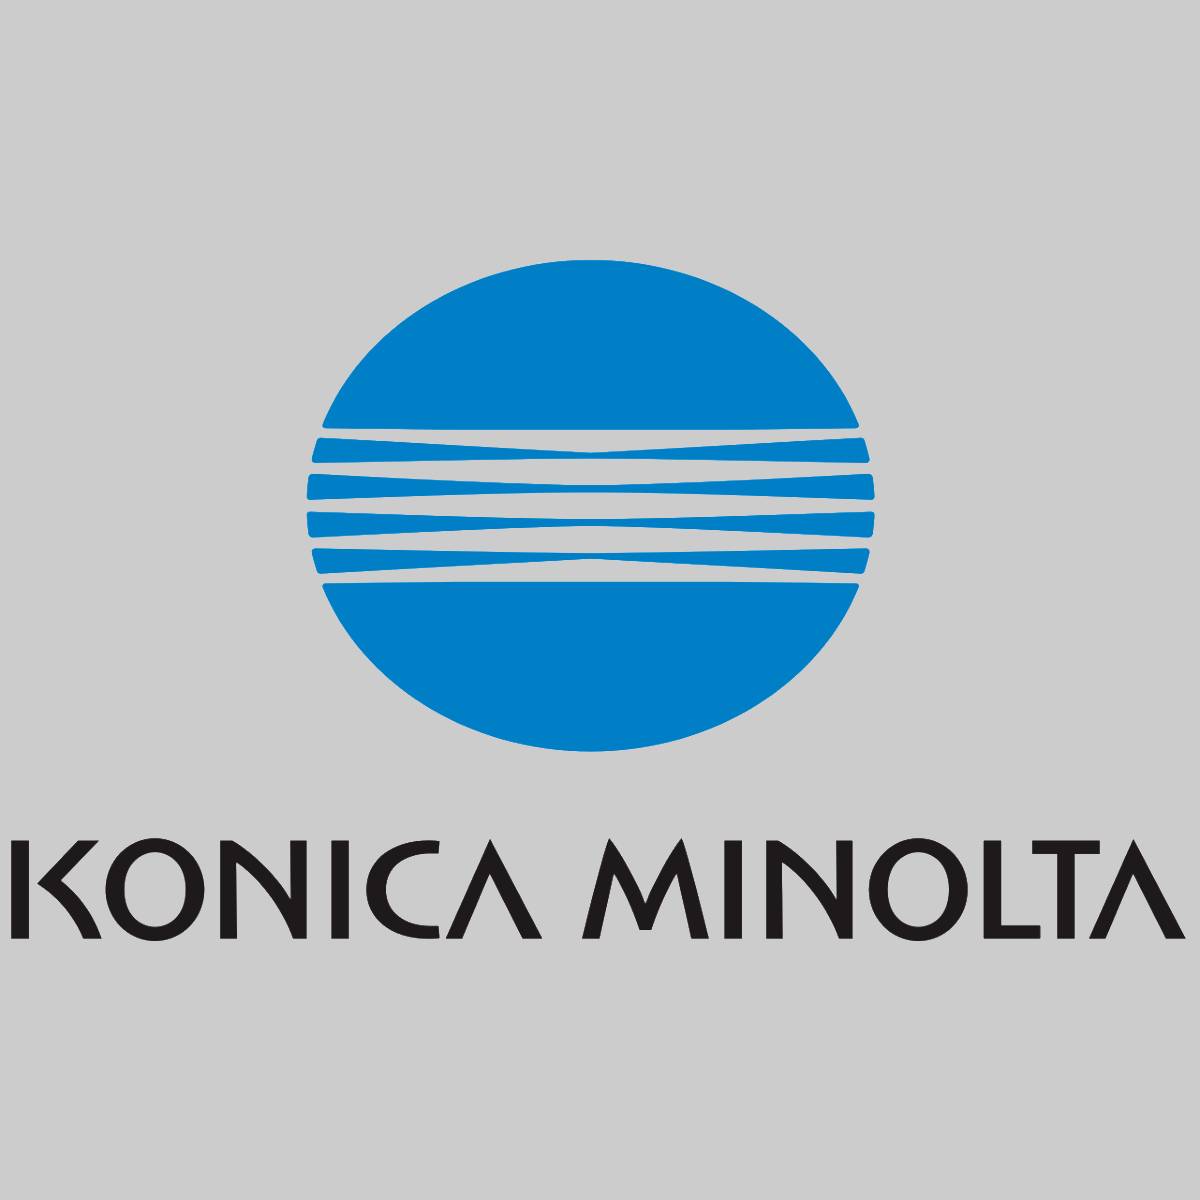 "Original Konica Minolta TN613 Toner Cyan A0TM450 for Bizhub C552 NEW OVP